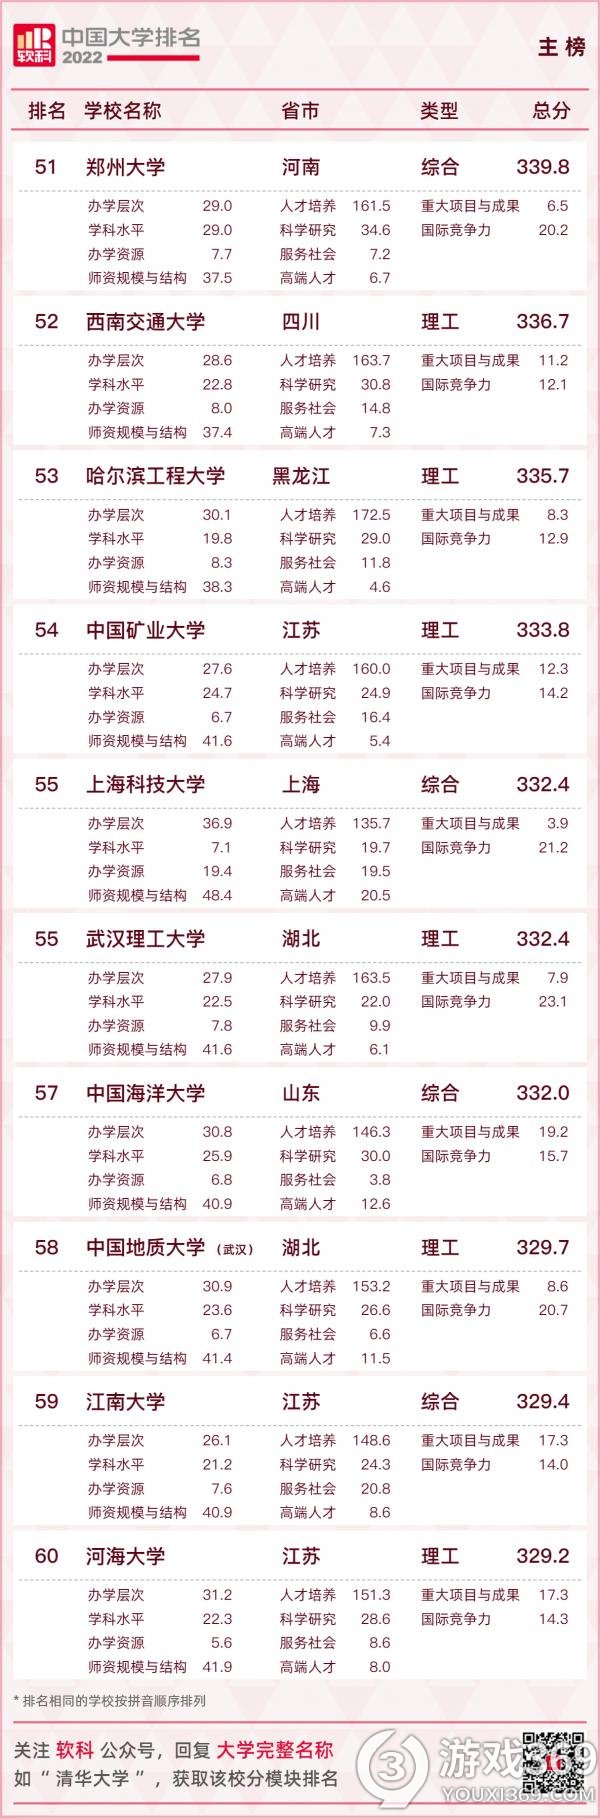 2022软科中国大学排名如何 2022软科中国大学主榜排名